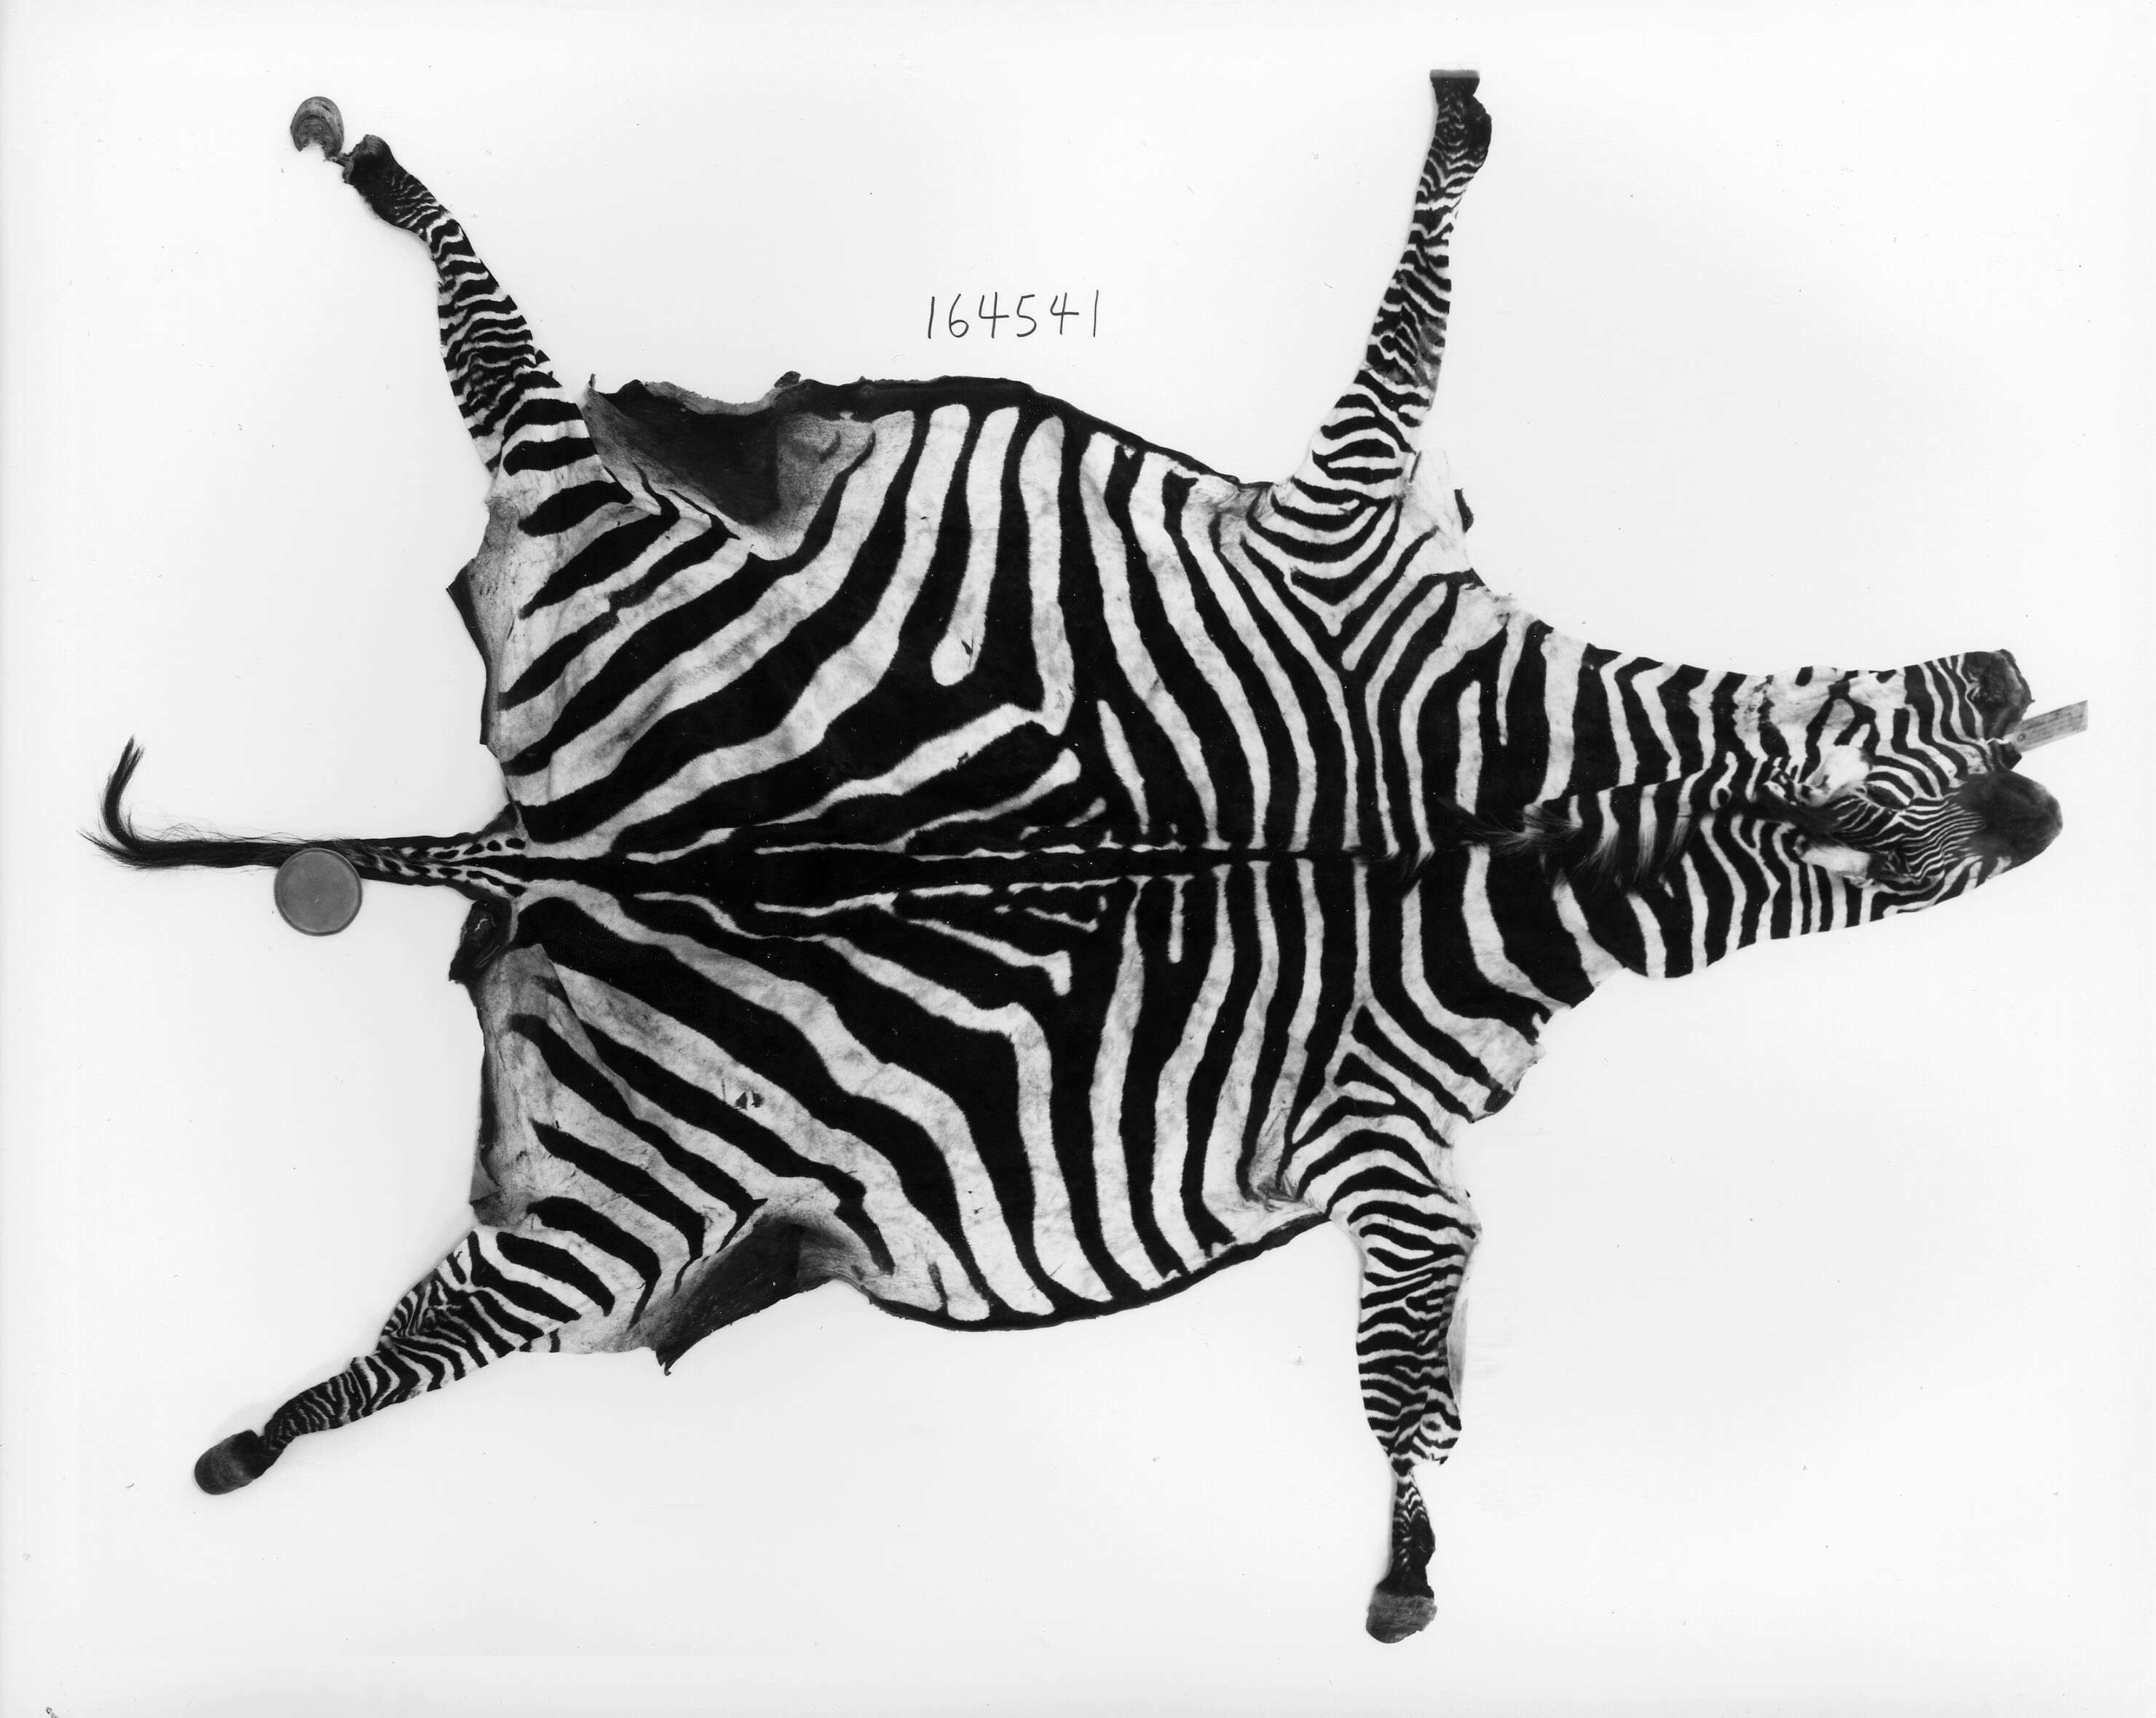 Image of Grant's zebra